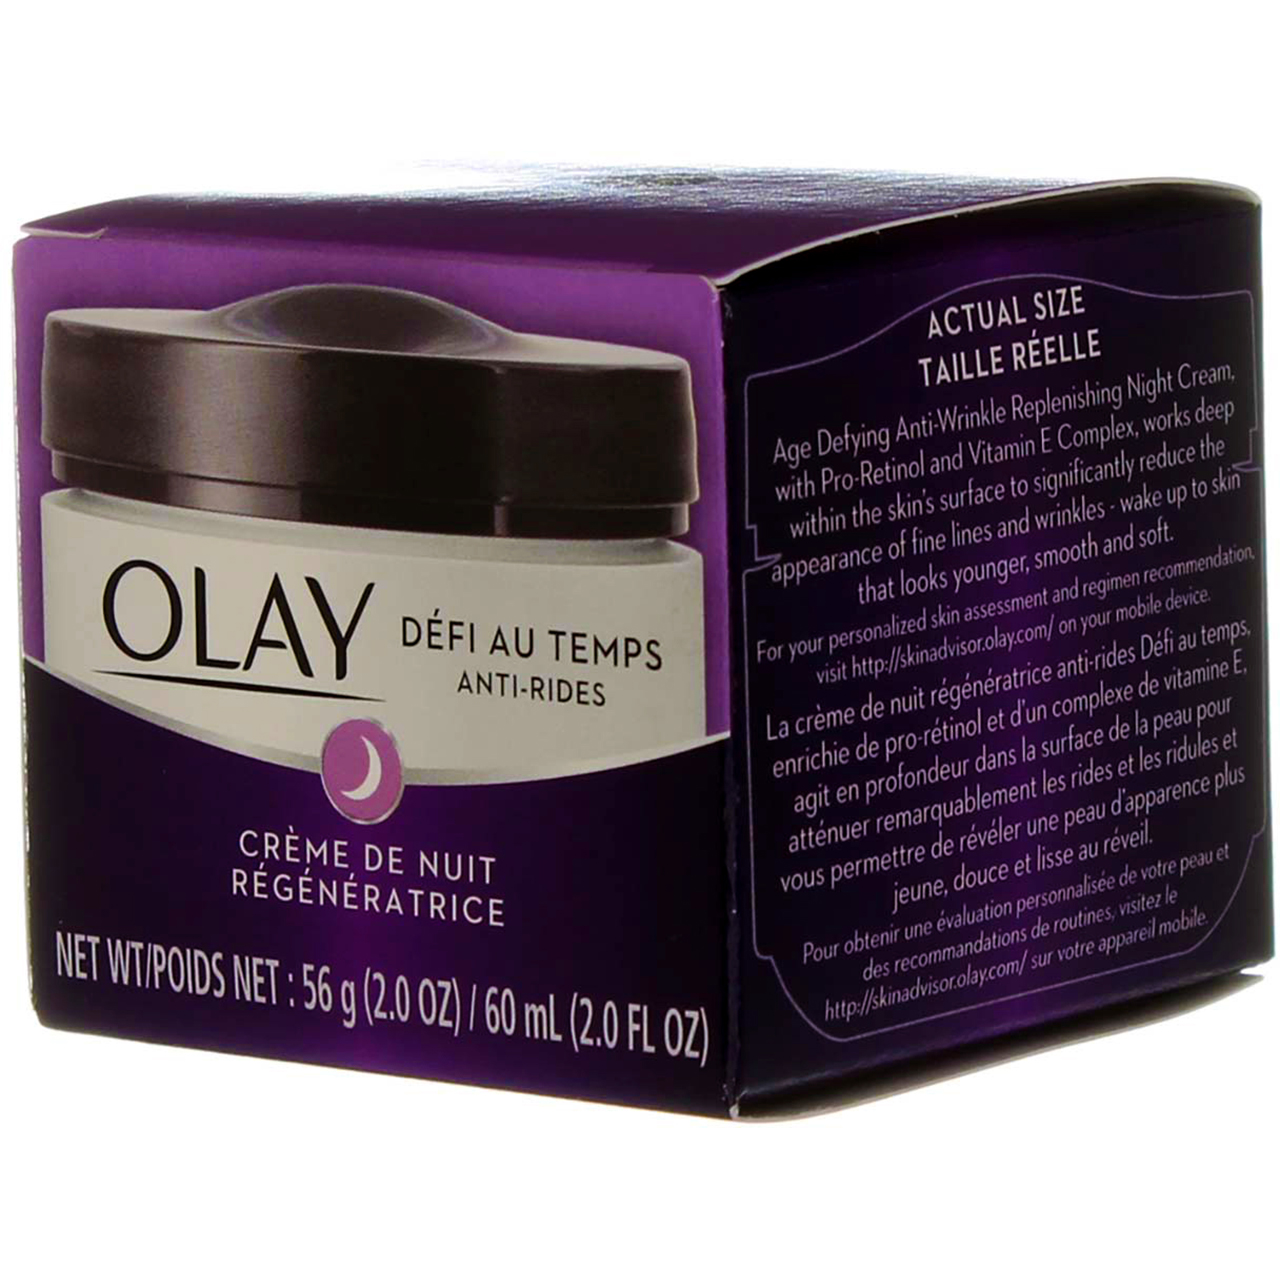 Olay Age Defying Anti-Wrinkle Replenishing Night Cream, 2 oz (Pack of 6) - image 5 of 5